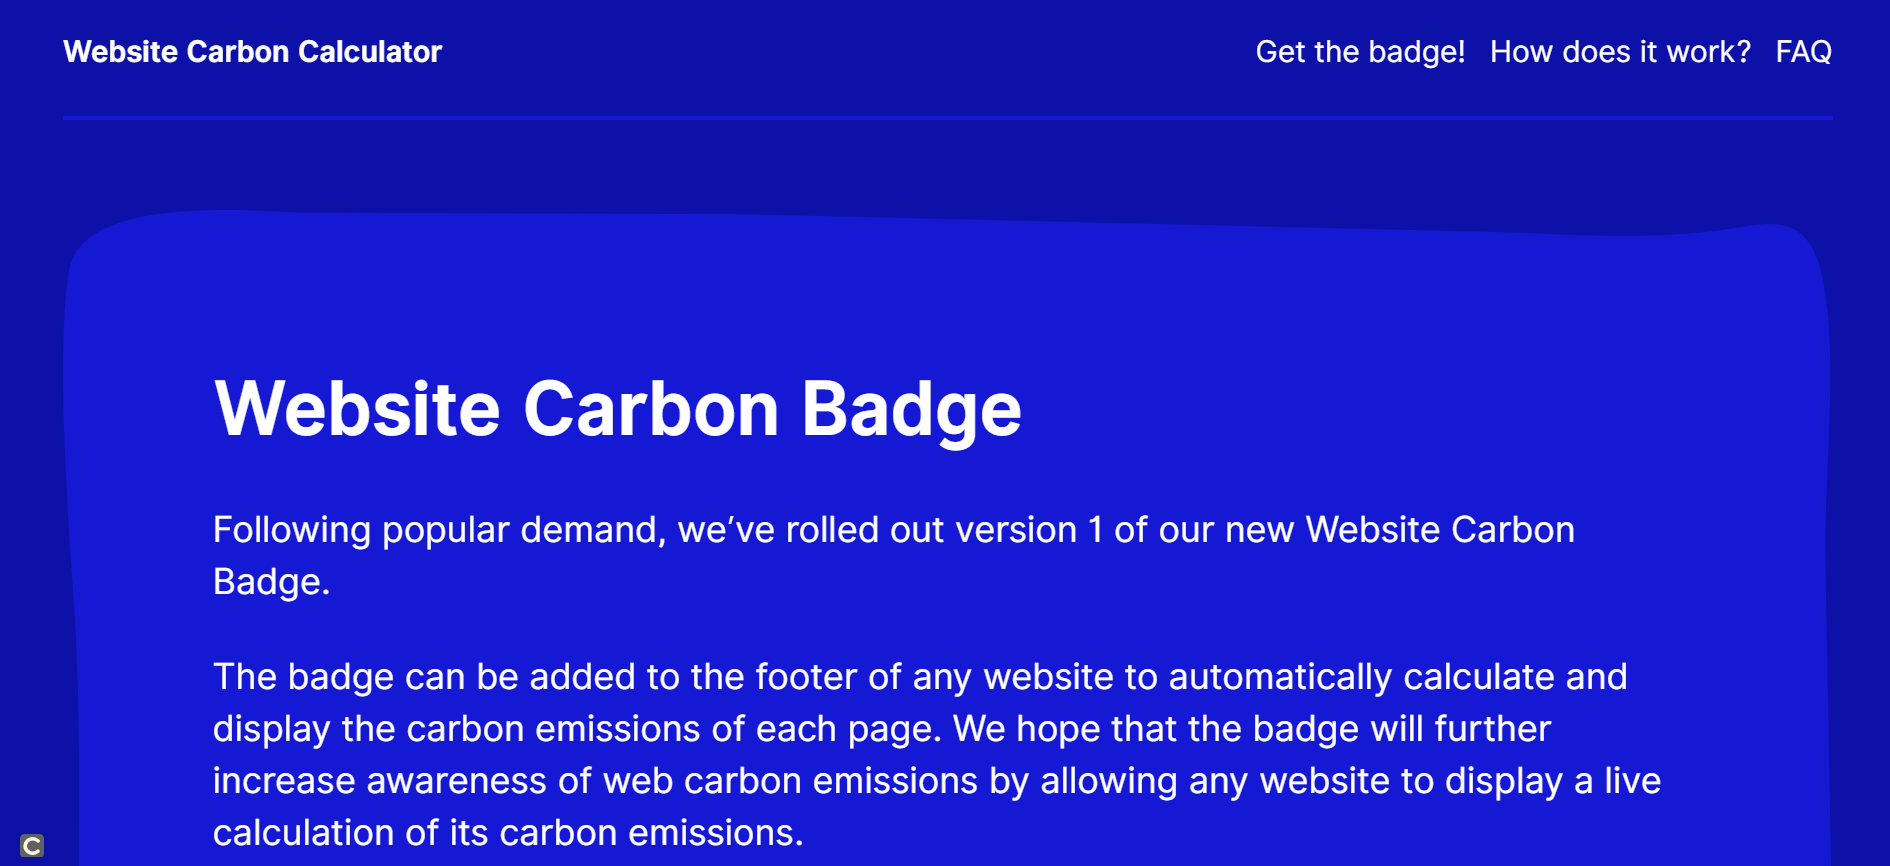 Web site carbon